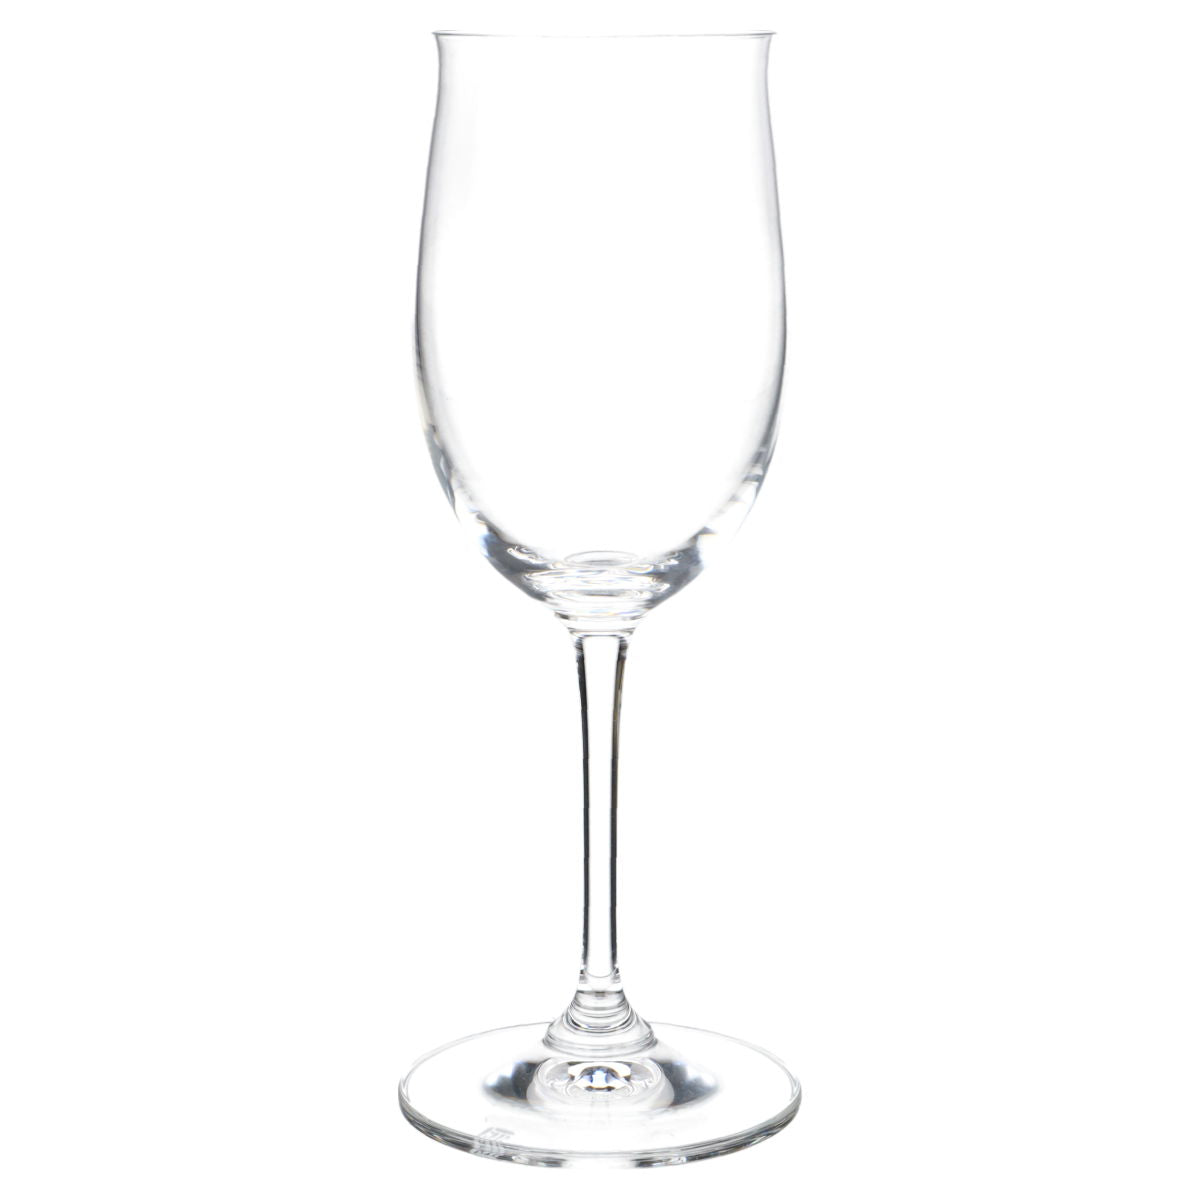 Weißweinglas Riesling 2 Gläser in OVP